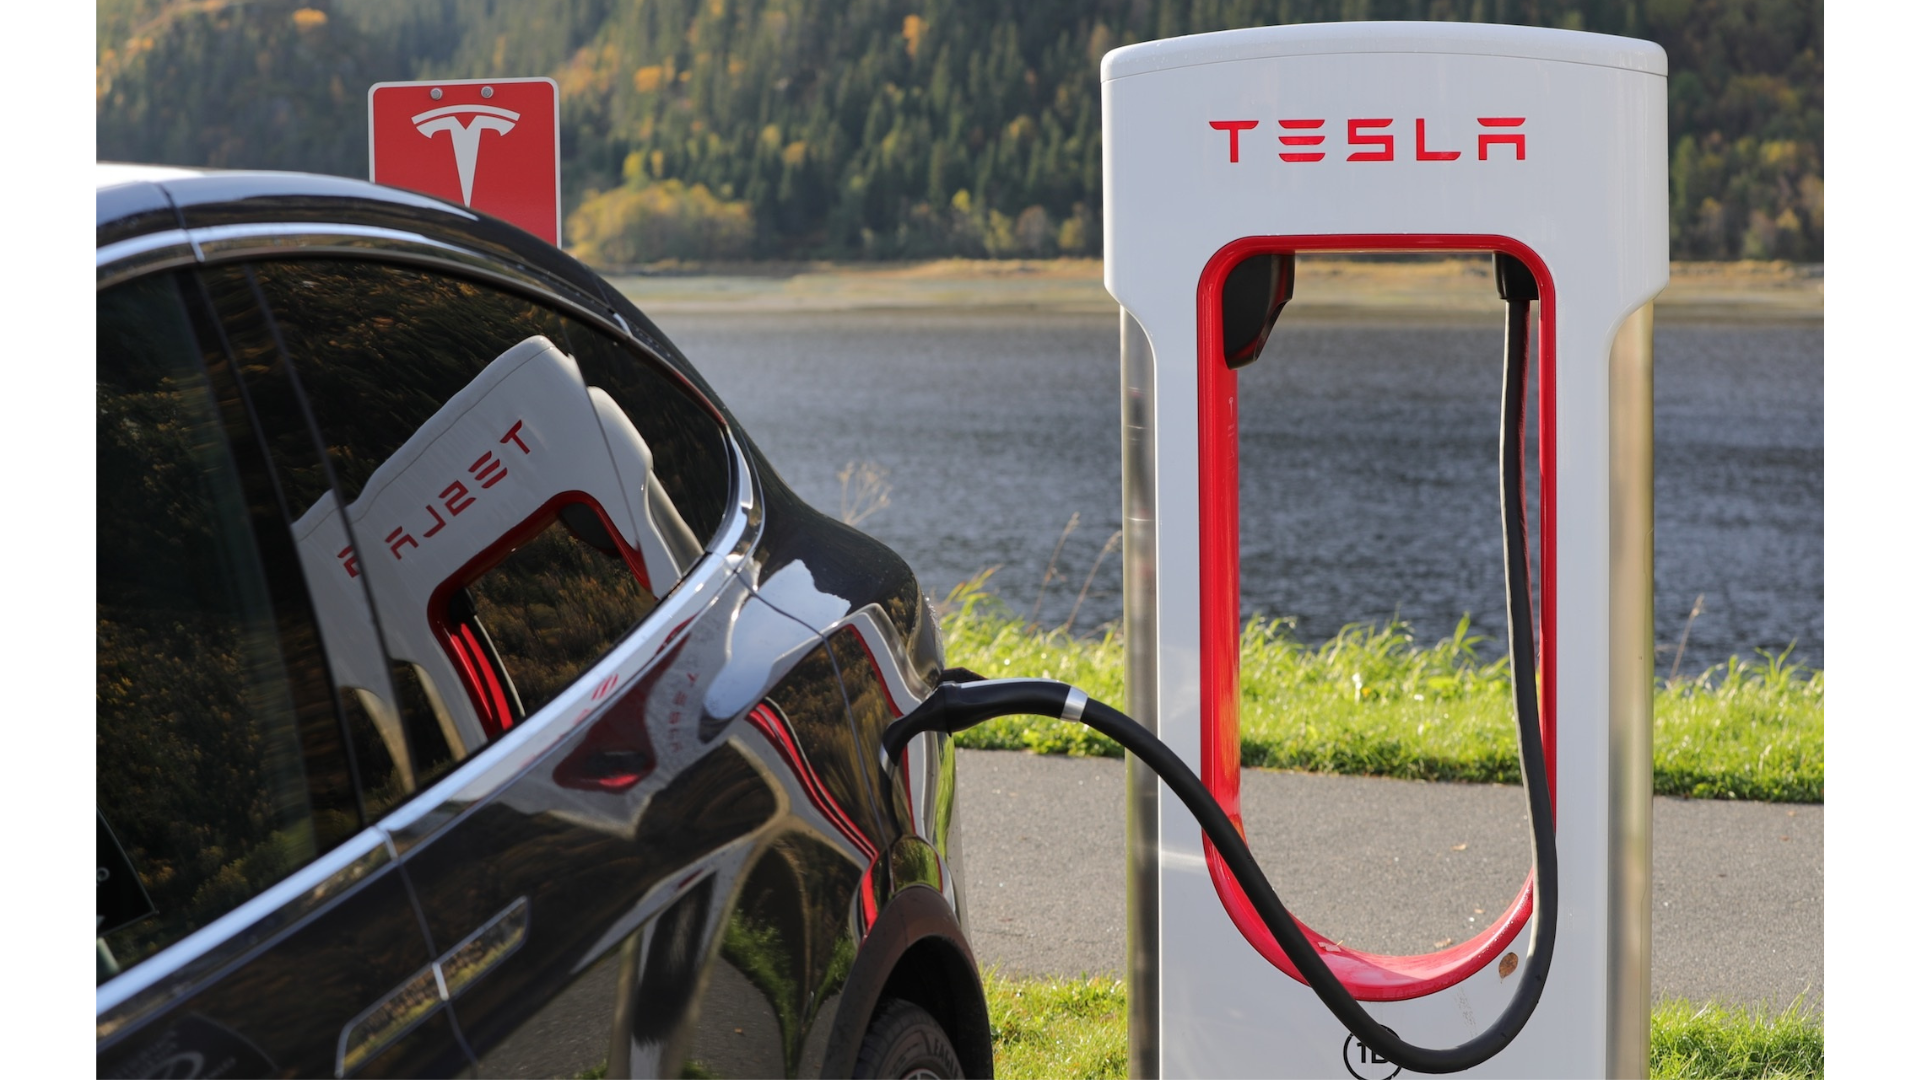 Tesla เปิดสถานี Supercharger แห่งแรกในไทย